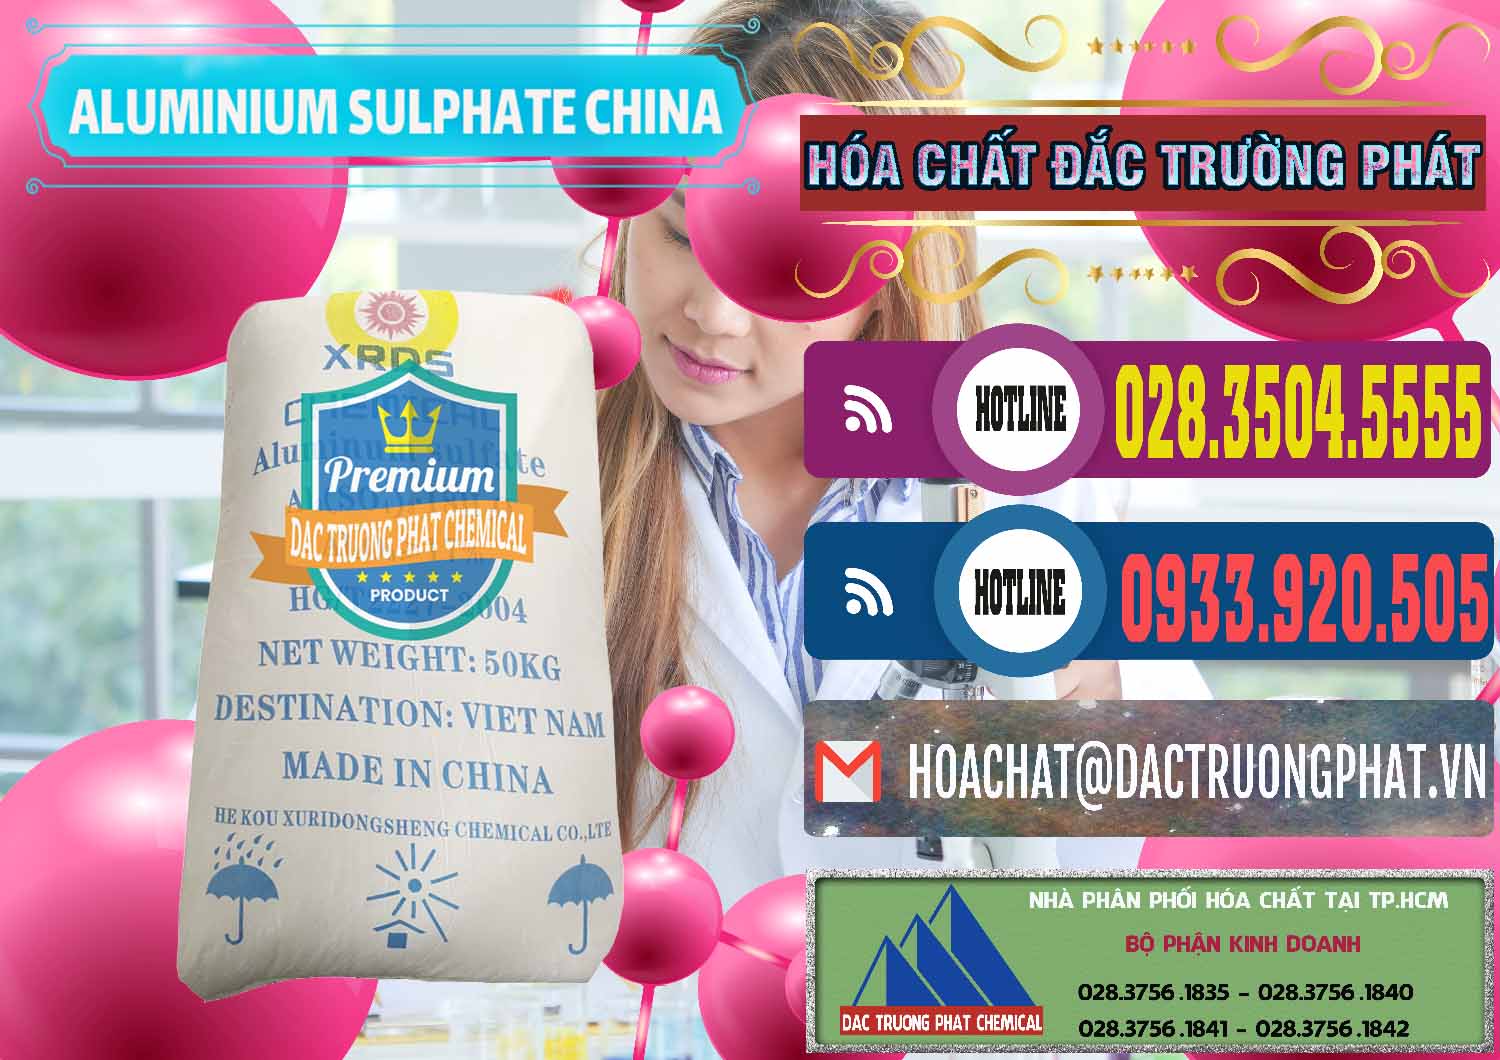 Nơi chuyên bán _ cung cấp Phèn Nhôm - Al2(SO4)3 17% Trung Quốc China - 0464 - Nơi cung cấp & phân phối hóa chất tại TP.HCM - muabanhoachat.com.vn